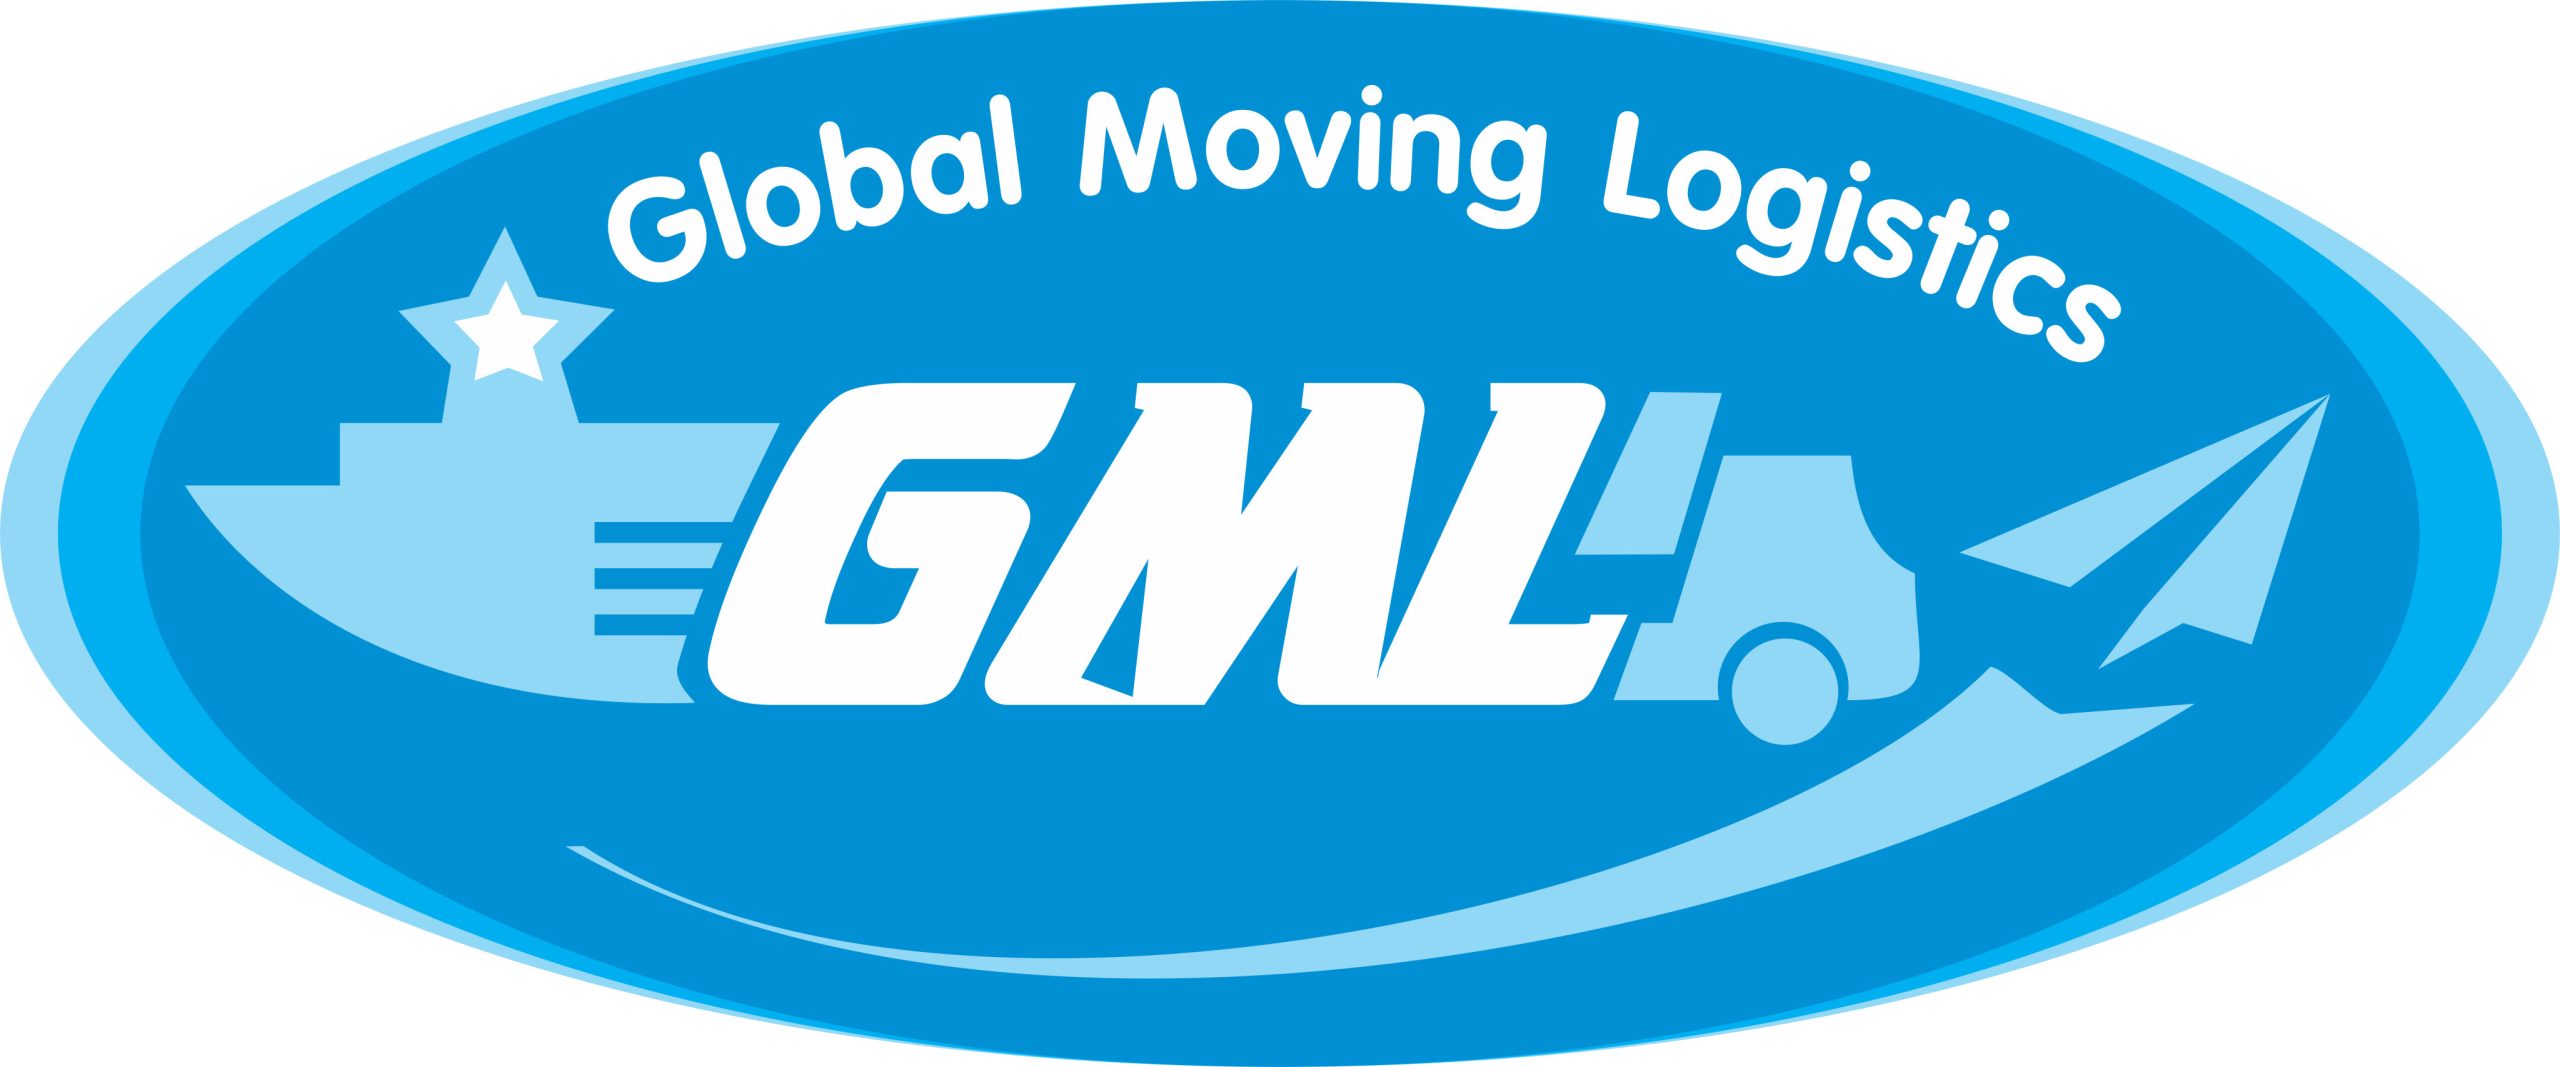 Global Moving Logistics Co., Ltd